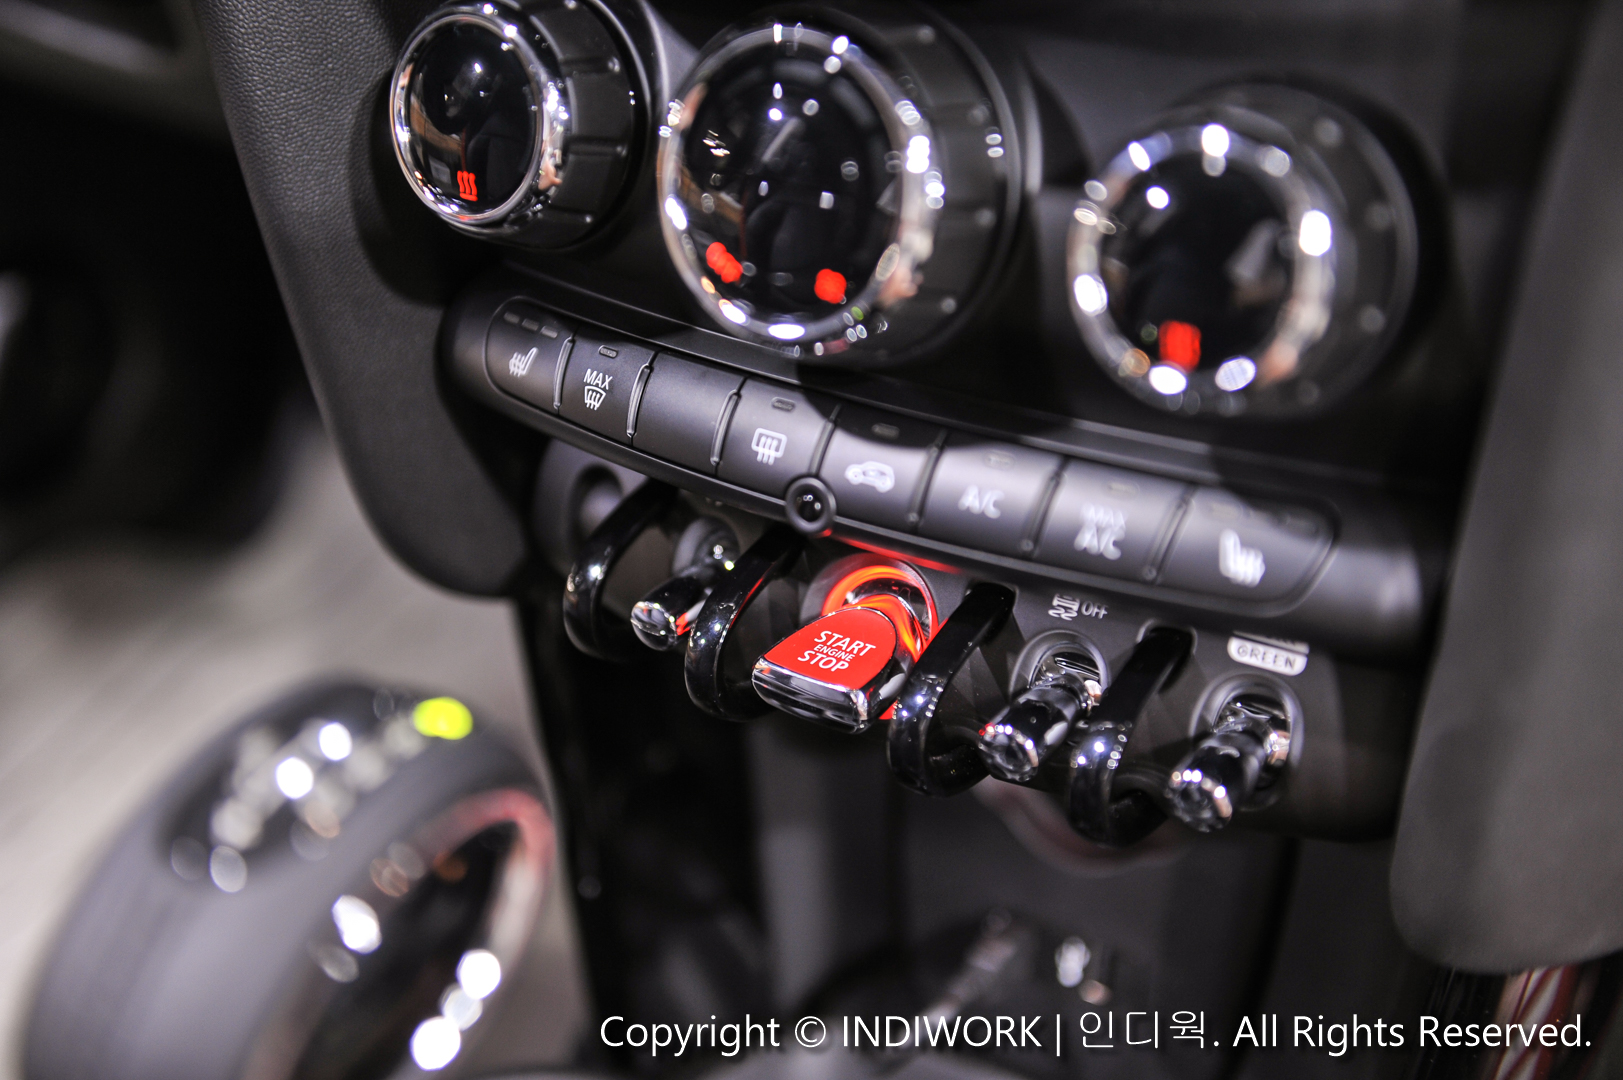 2019 MINI Cooper F56 interior